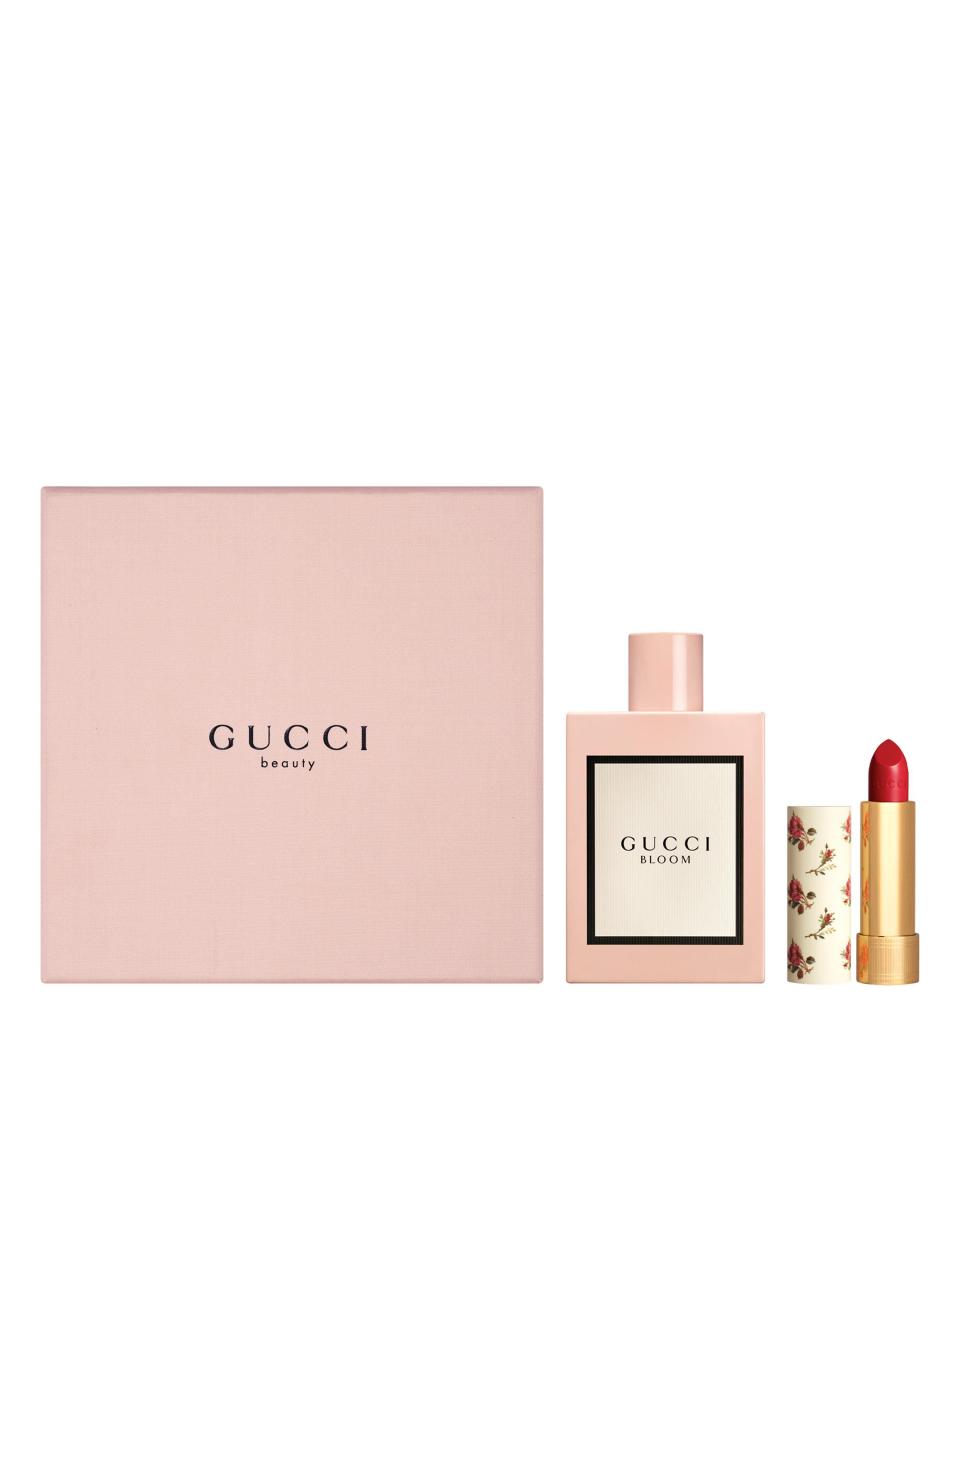 31) Bloom Eau de Parfum & Sheer Lipstick Set ($172 Value)